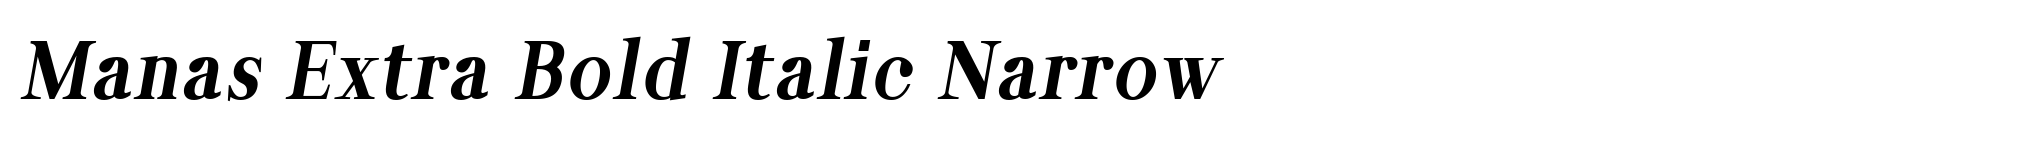 Manas Extra Bold Italic Narrow image